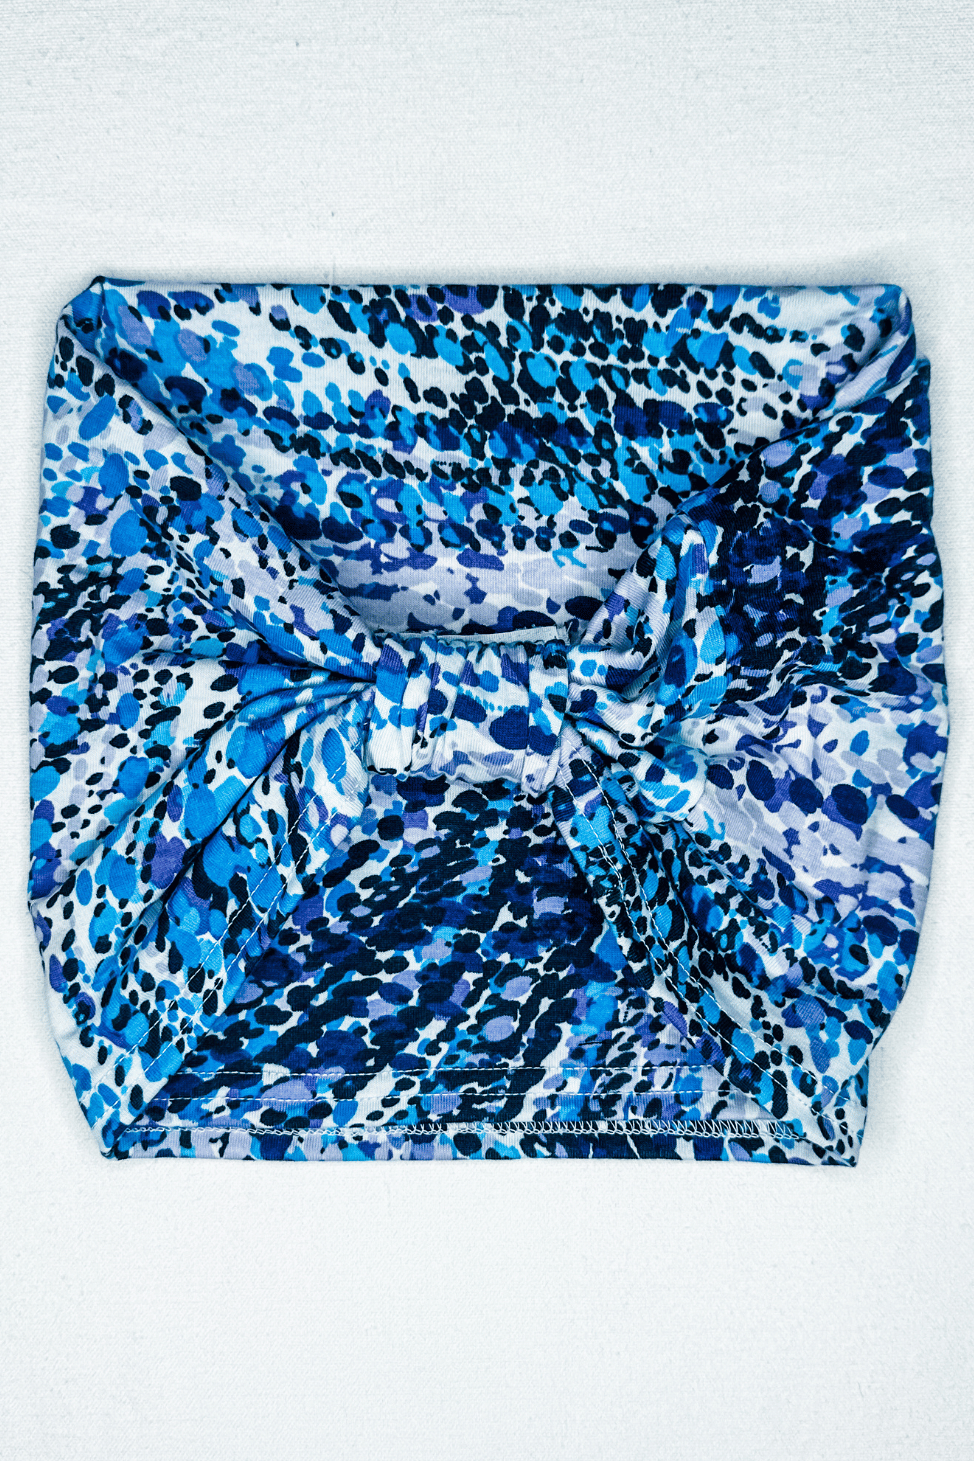 Headband Accessory in Whirlpool Purple Blue print from Diane Kroe